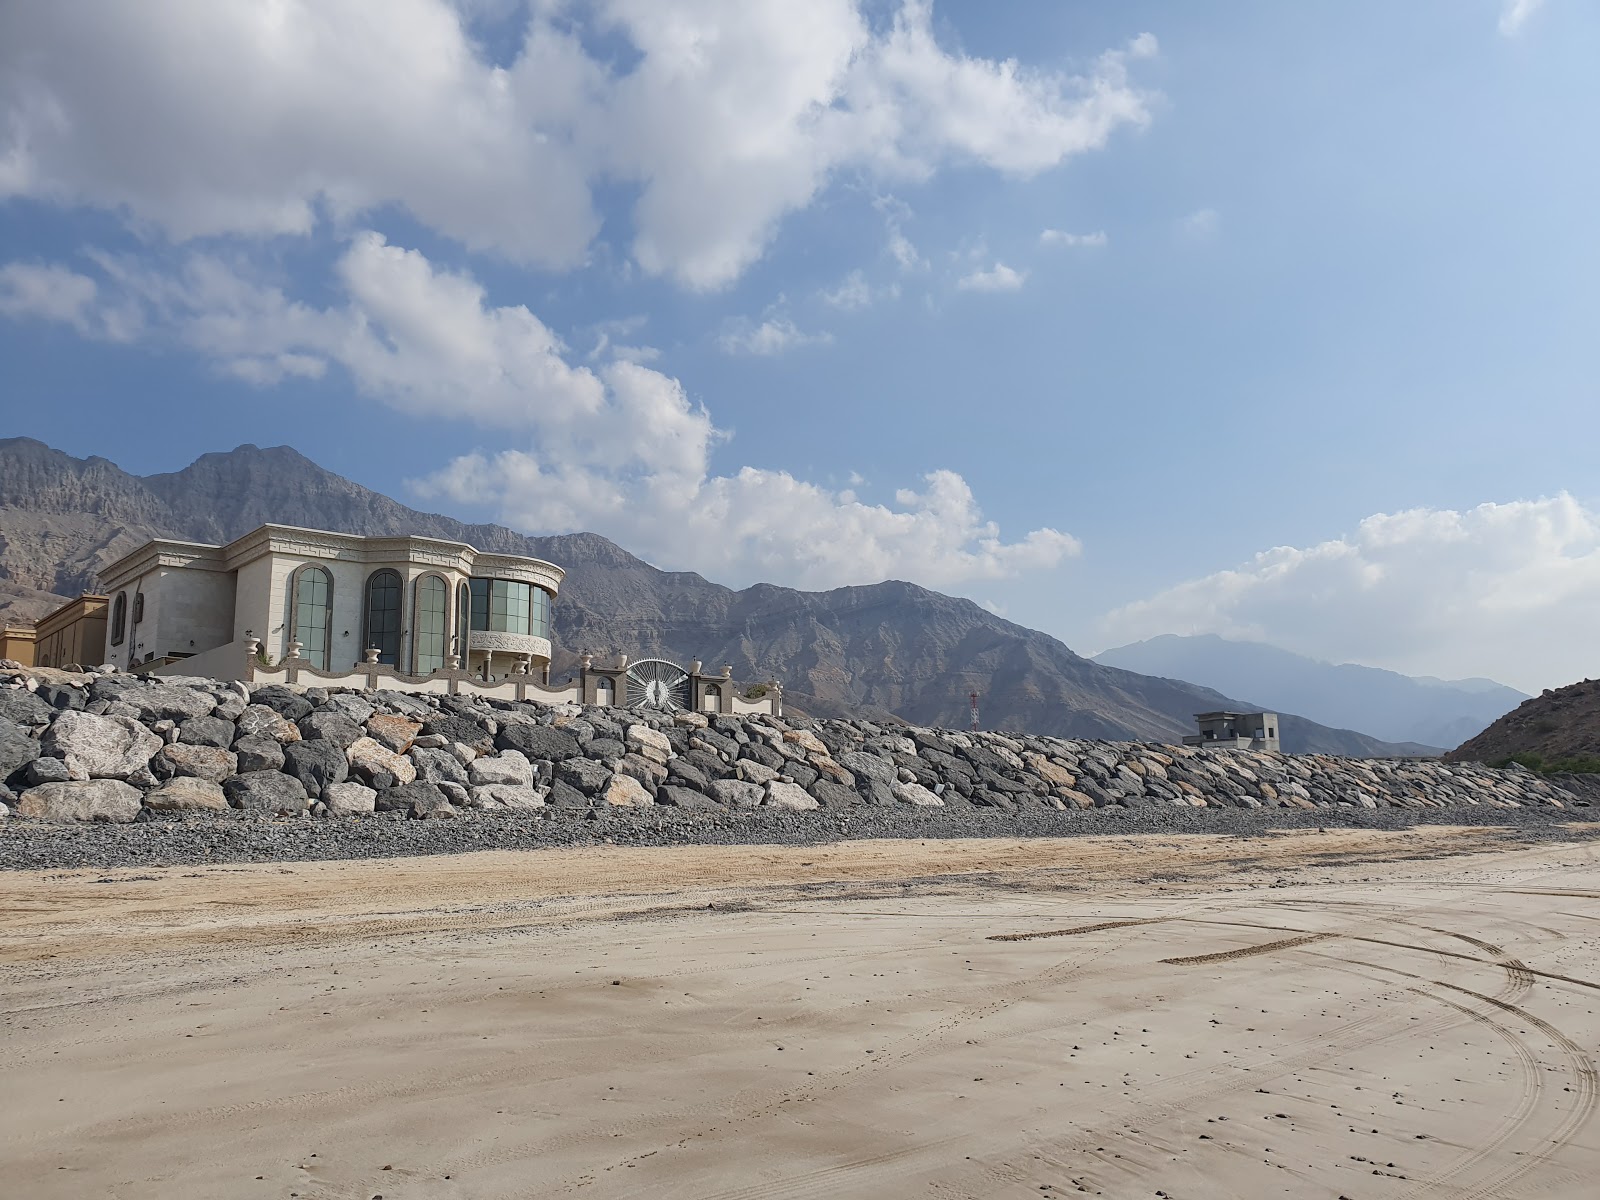 Shaam beach'in fotoğrafı geniş plaj ile birlikte